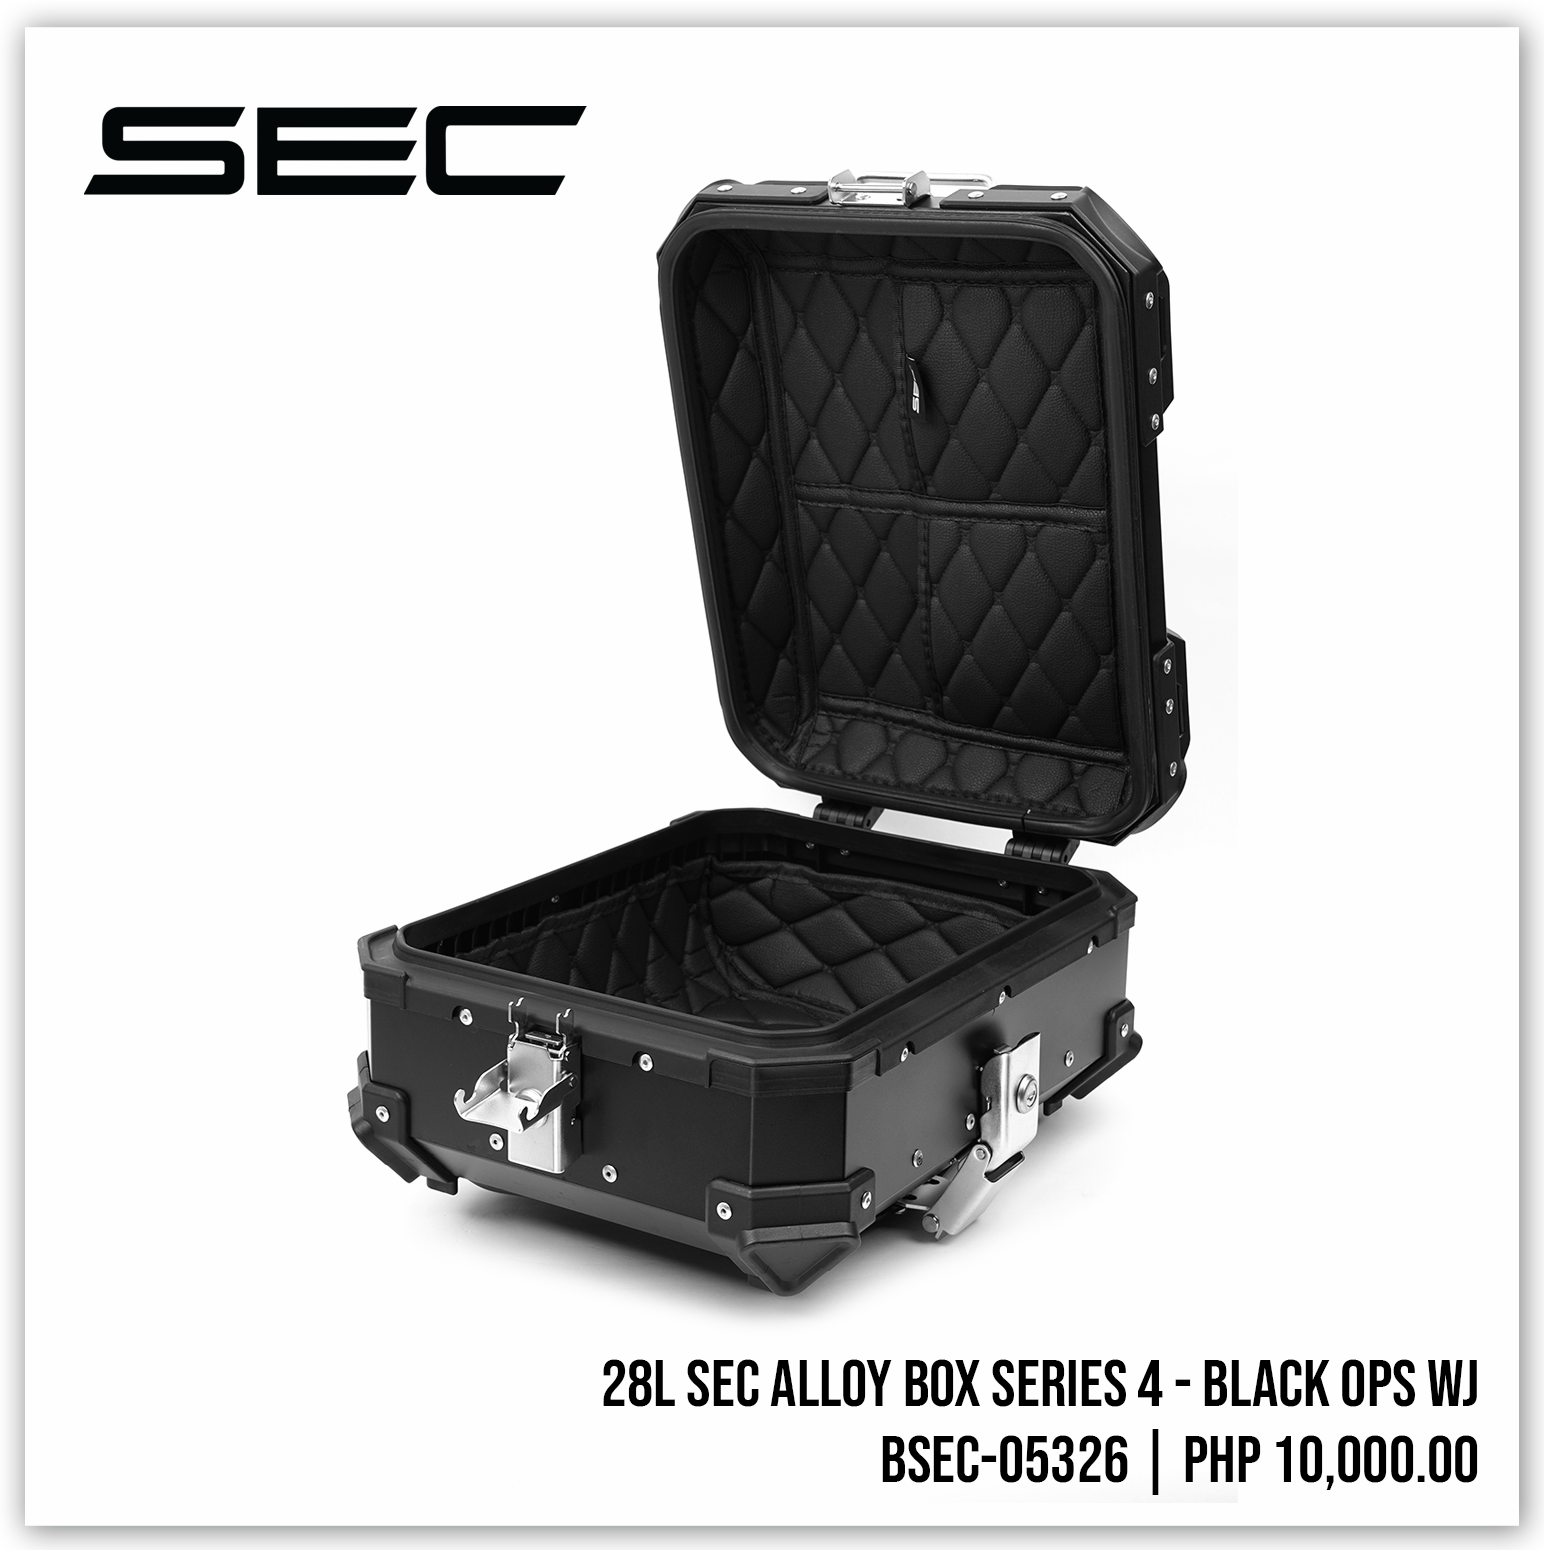 28L SEC Alloy Box Series 4 - Black Ops WJ